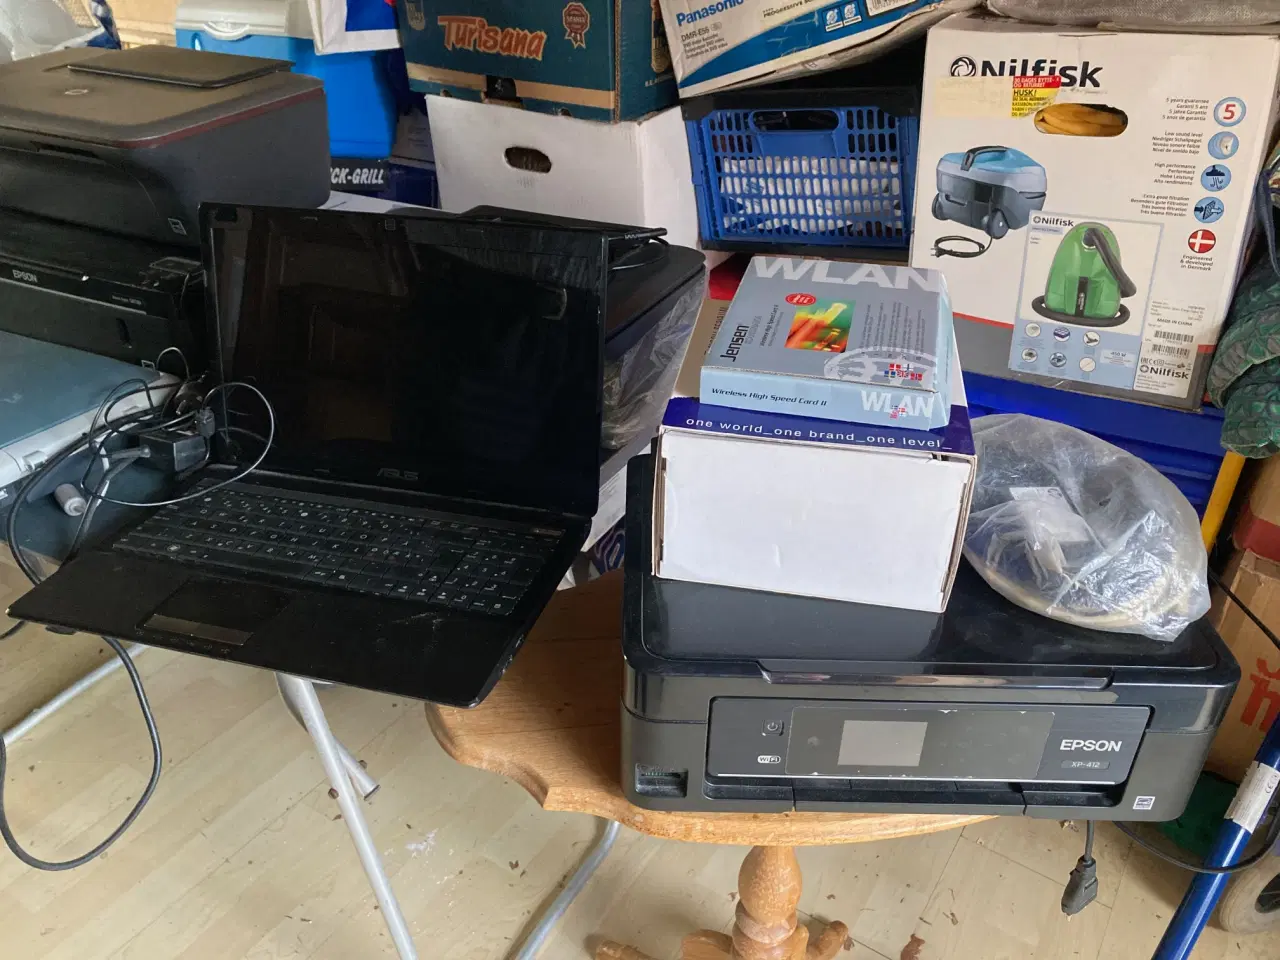 Billede 1 - 4 printere, 1 scanner og 1 bærbar PC samt router